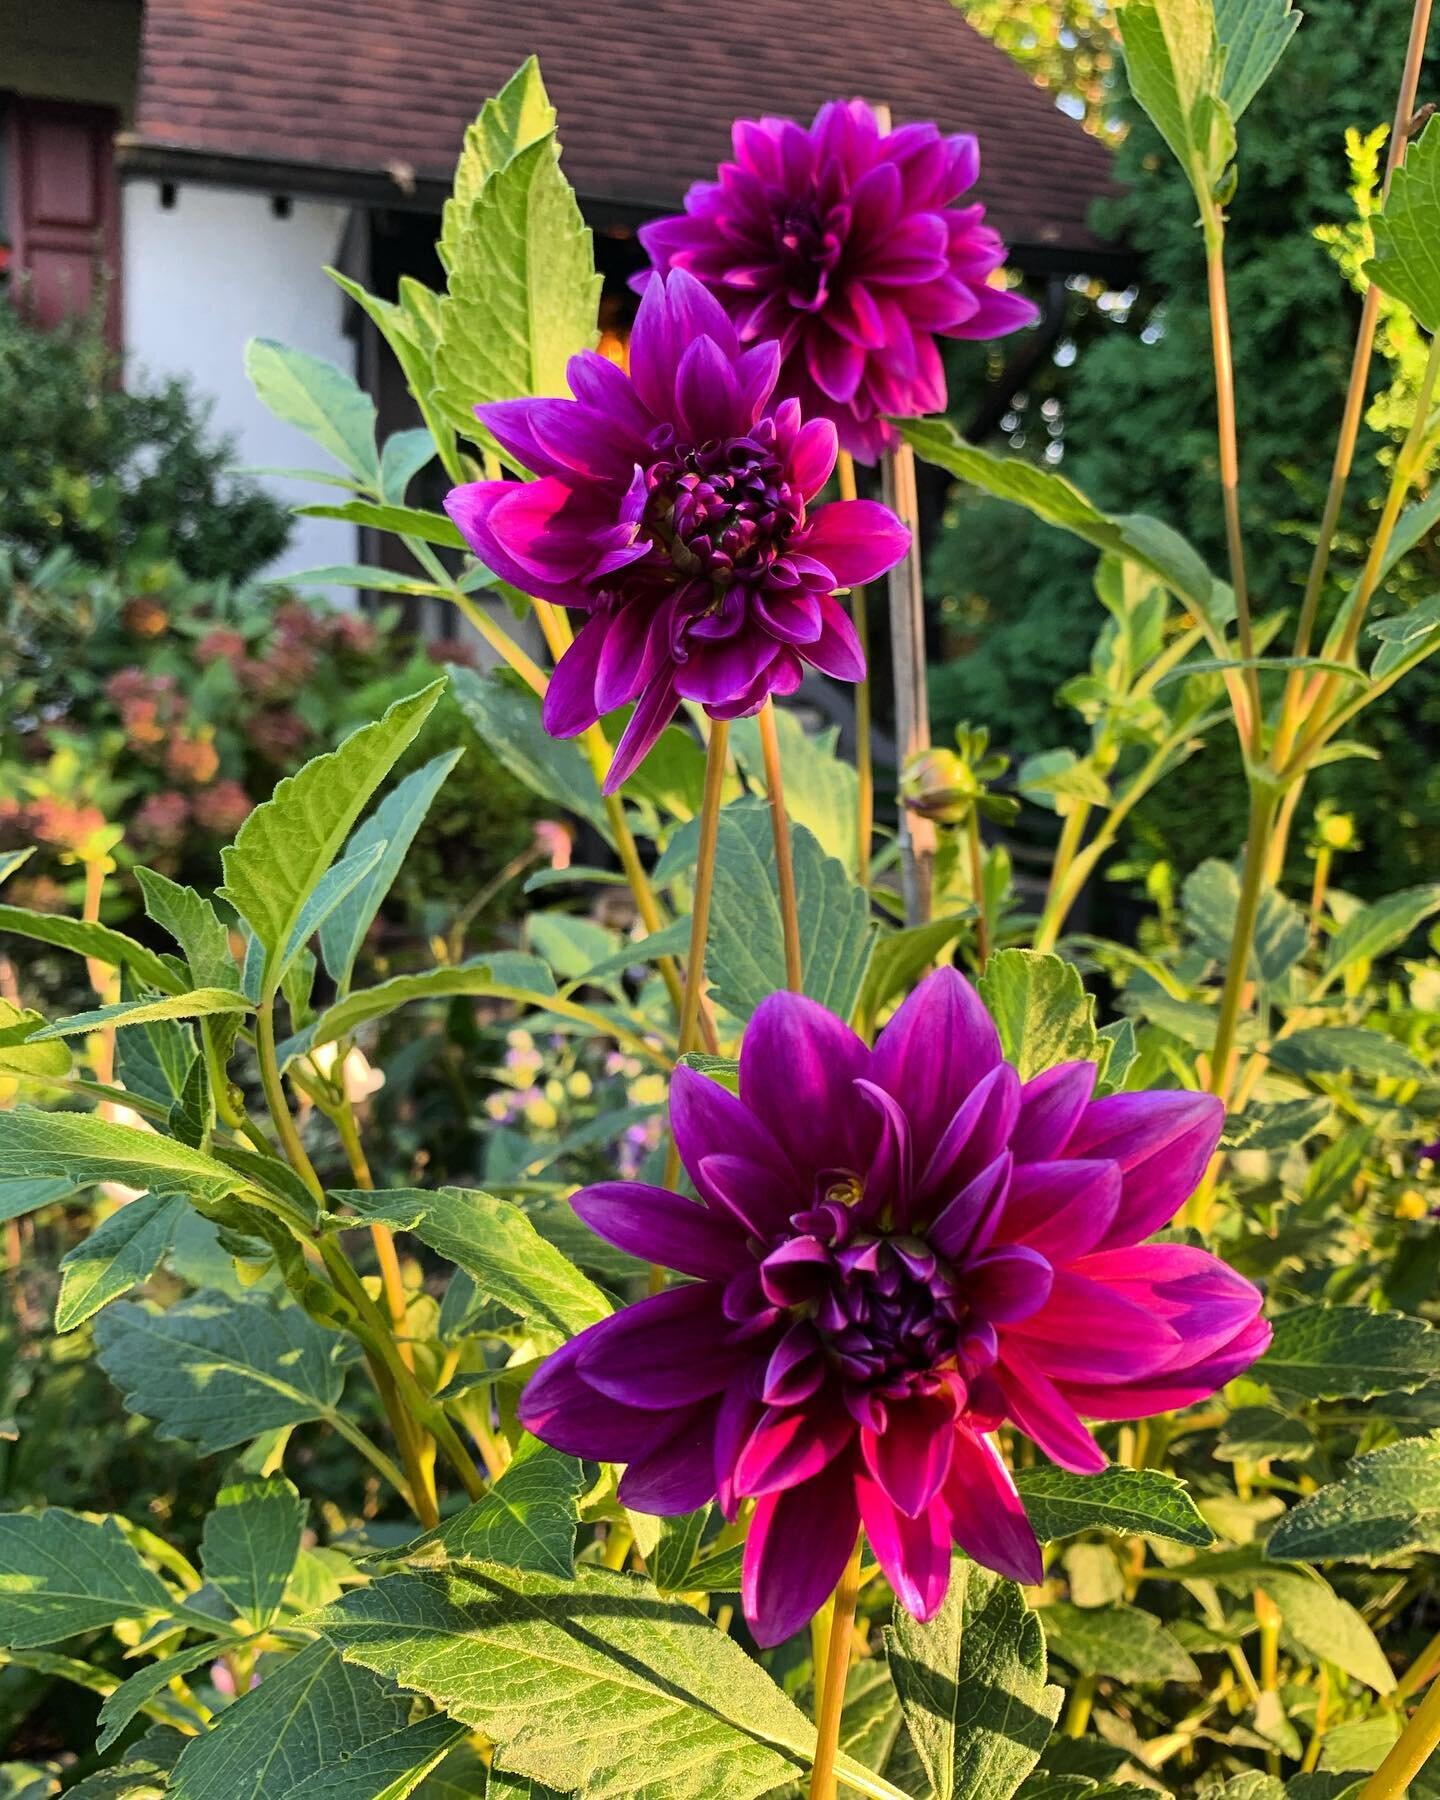 Dahlias in the front garden...
.
.
.
#dahlia #dahlias #lebaron #flower #flowers #purple #blooming #septembergarden #garden #gardens #gardening #frontgarden #frontyardgarden #mygarden #njgarden #nograssgarden #cuttinggarden #gardenbeds #gardenborder #